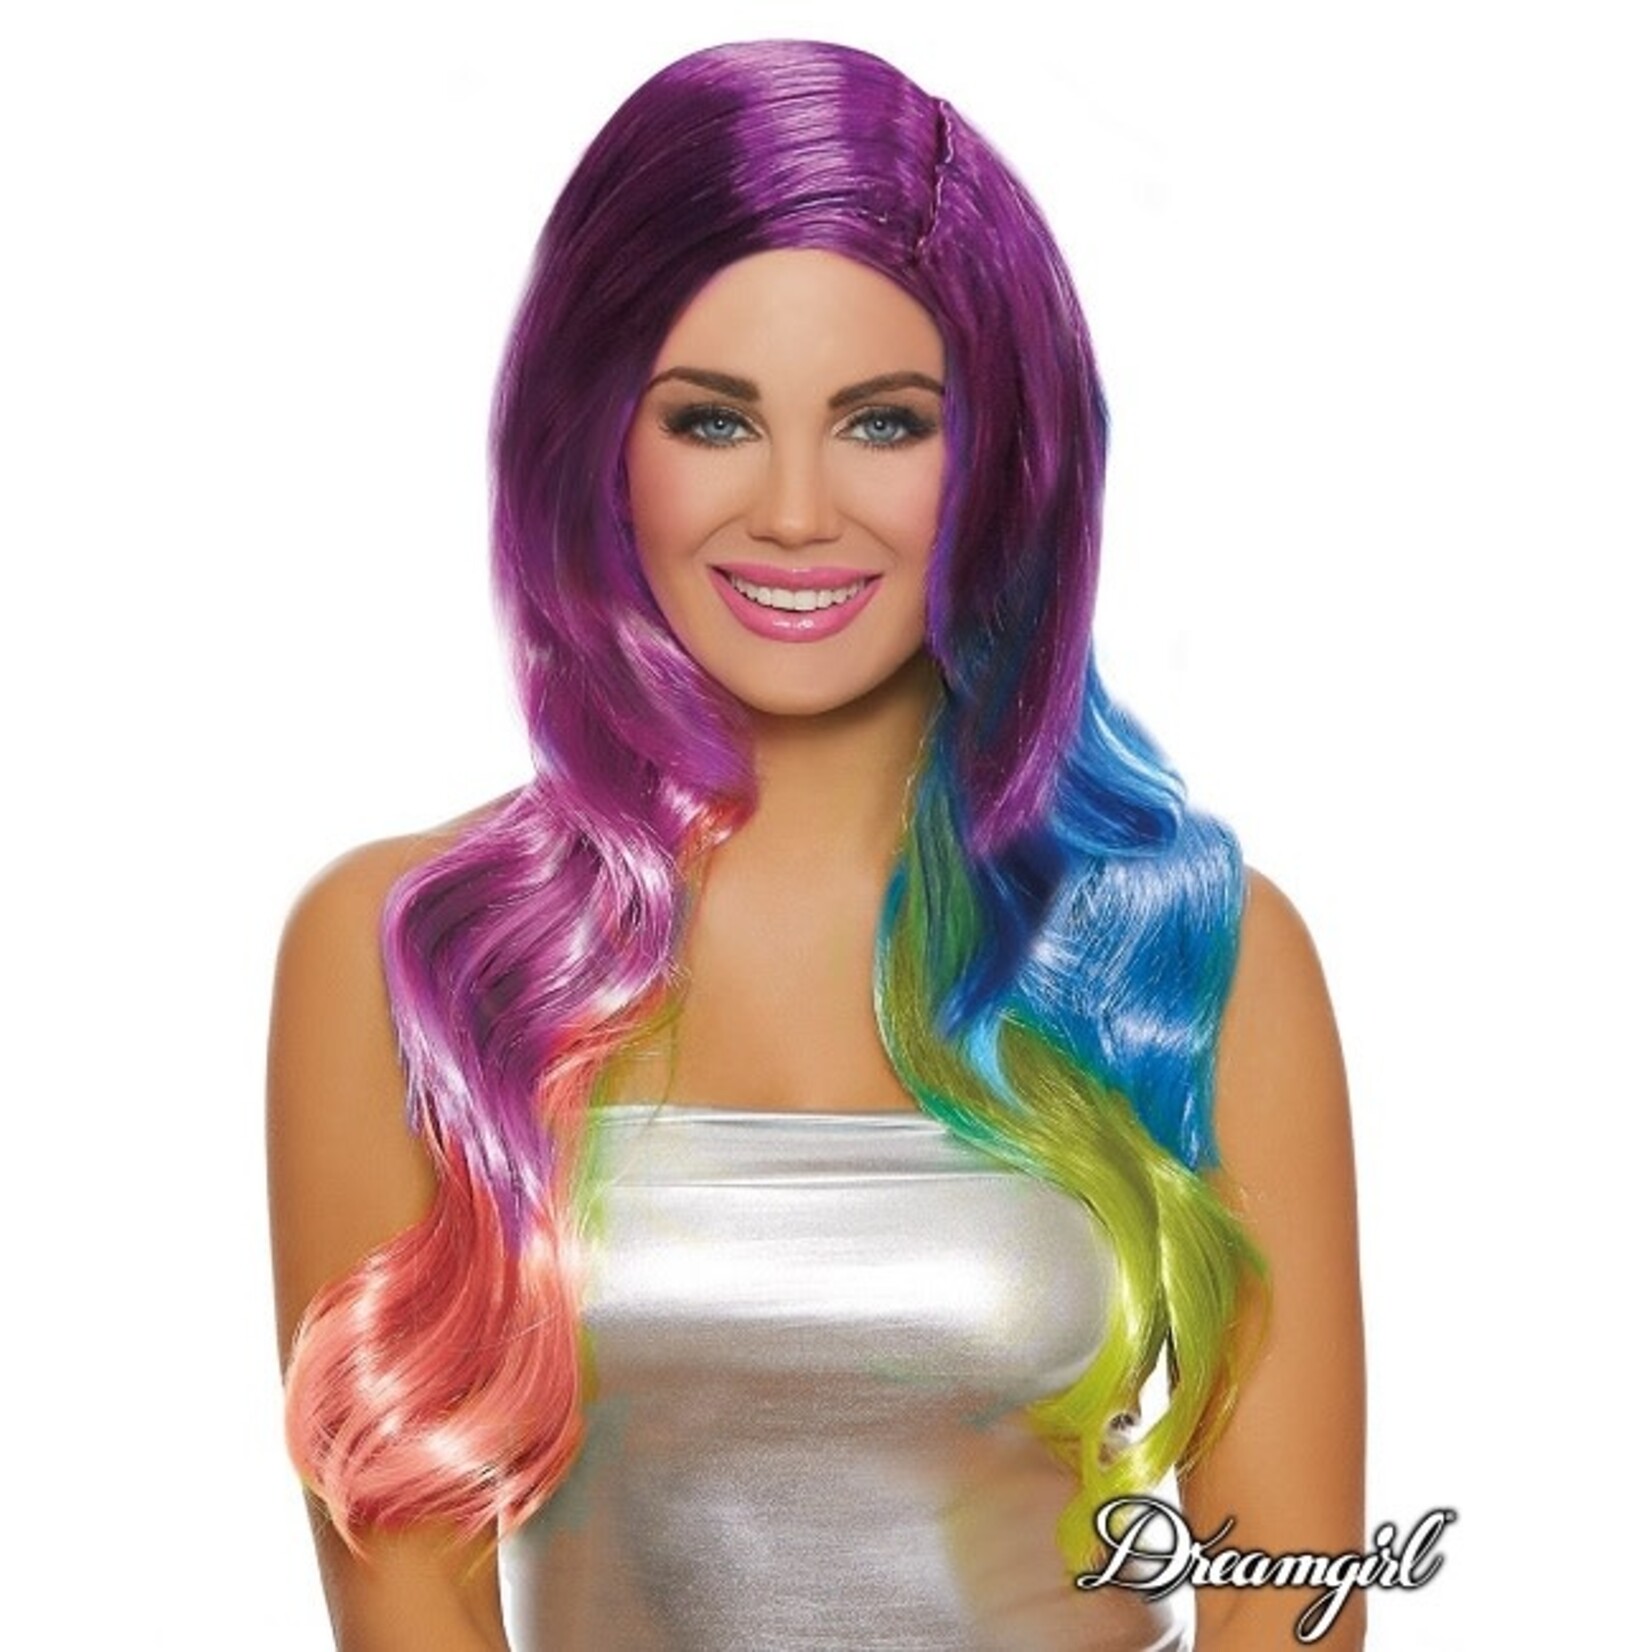 Dreamgirl Dreamgirl Long Wavy Rainbow Ombré Wig